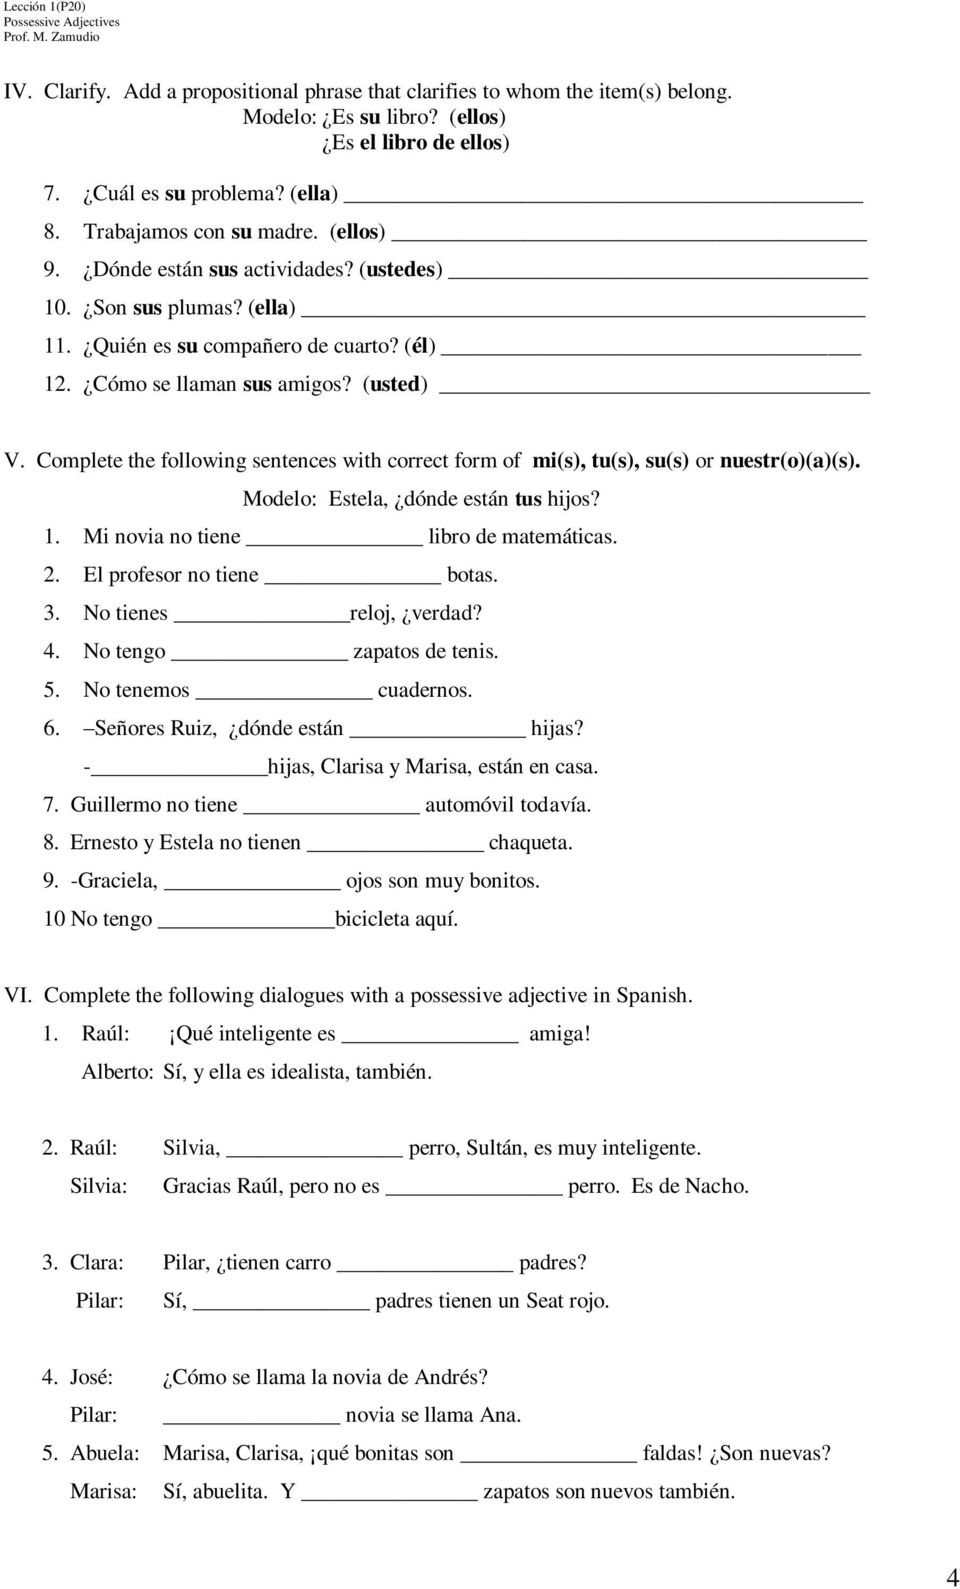 Complete the following sentences with correct form of mi(s), tu(s), su(s) or nuestr(o)(a)(s). Modelo: Estela, dónde están tus hijos? 1. Mi novia no tiene libro de matemáticas. 2.